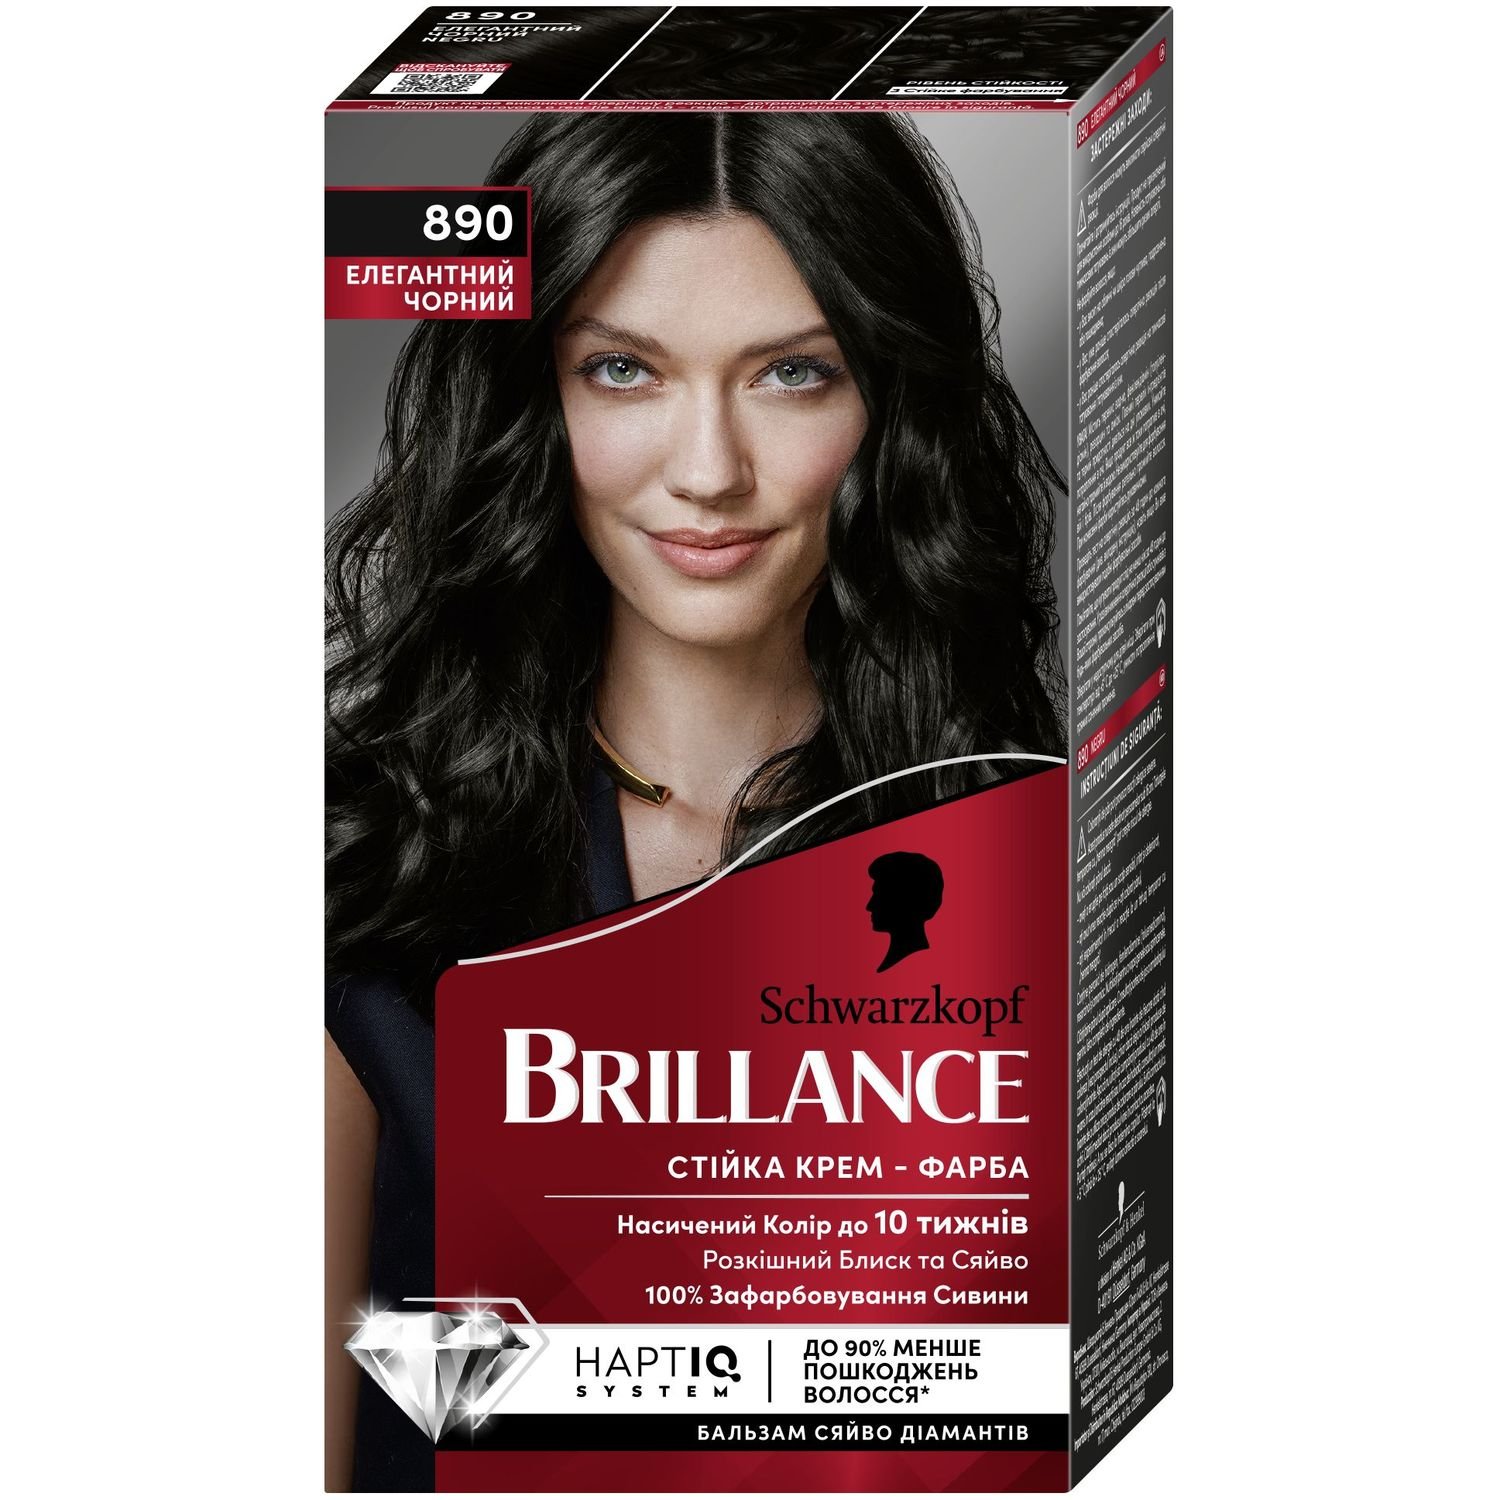 Крем-фарба для волосся Brillance 890 Елегантний чорний, 160 мл (2686351) - фото 1